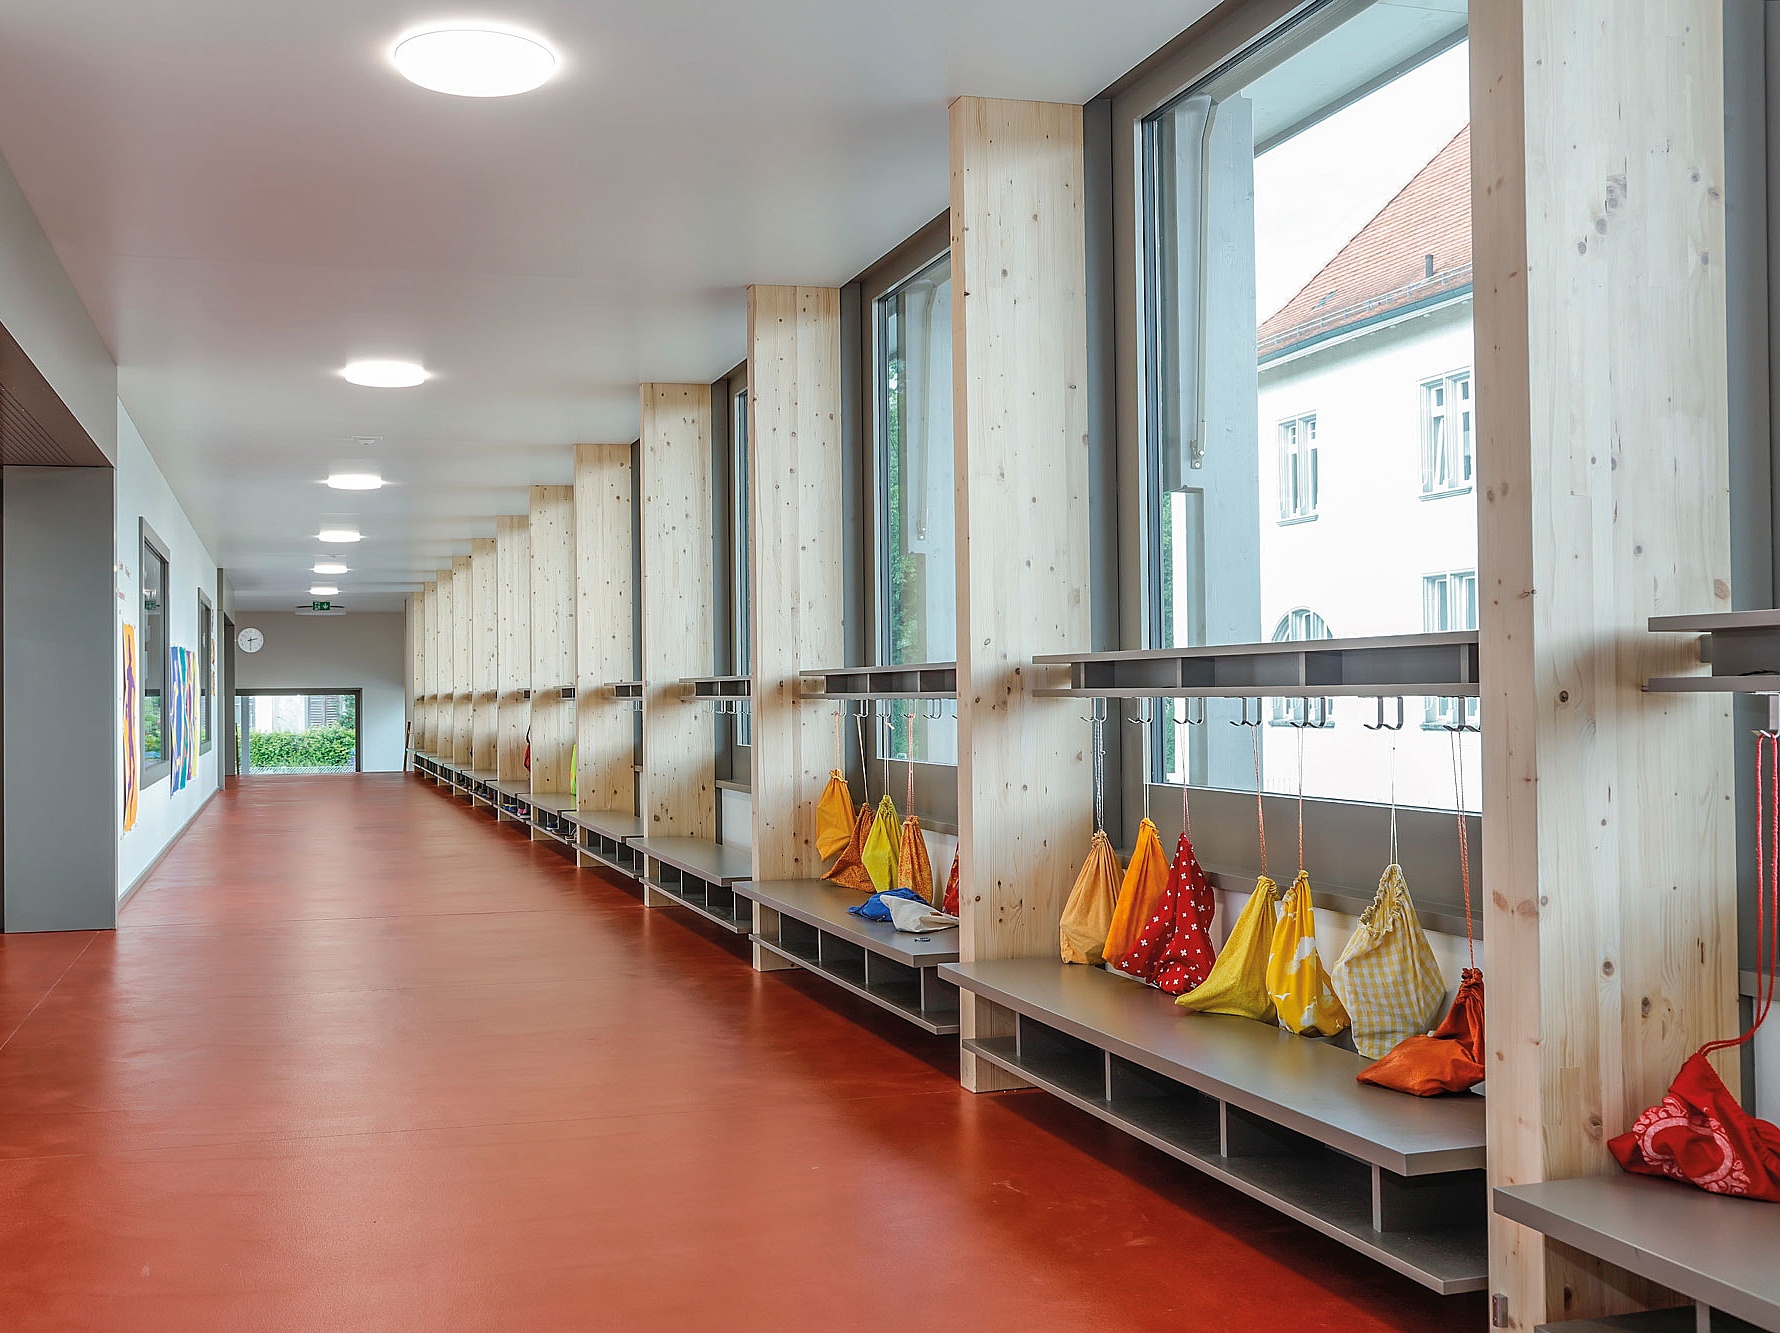 Primarschule in Thundorf - Referenz für Arbonia Produkte